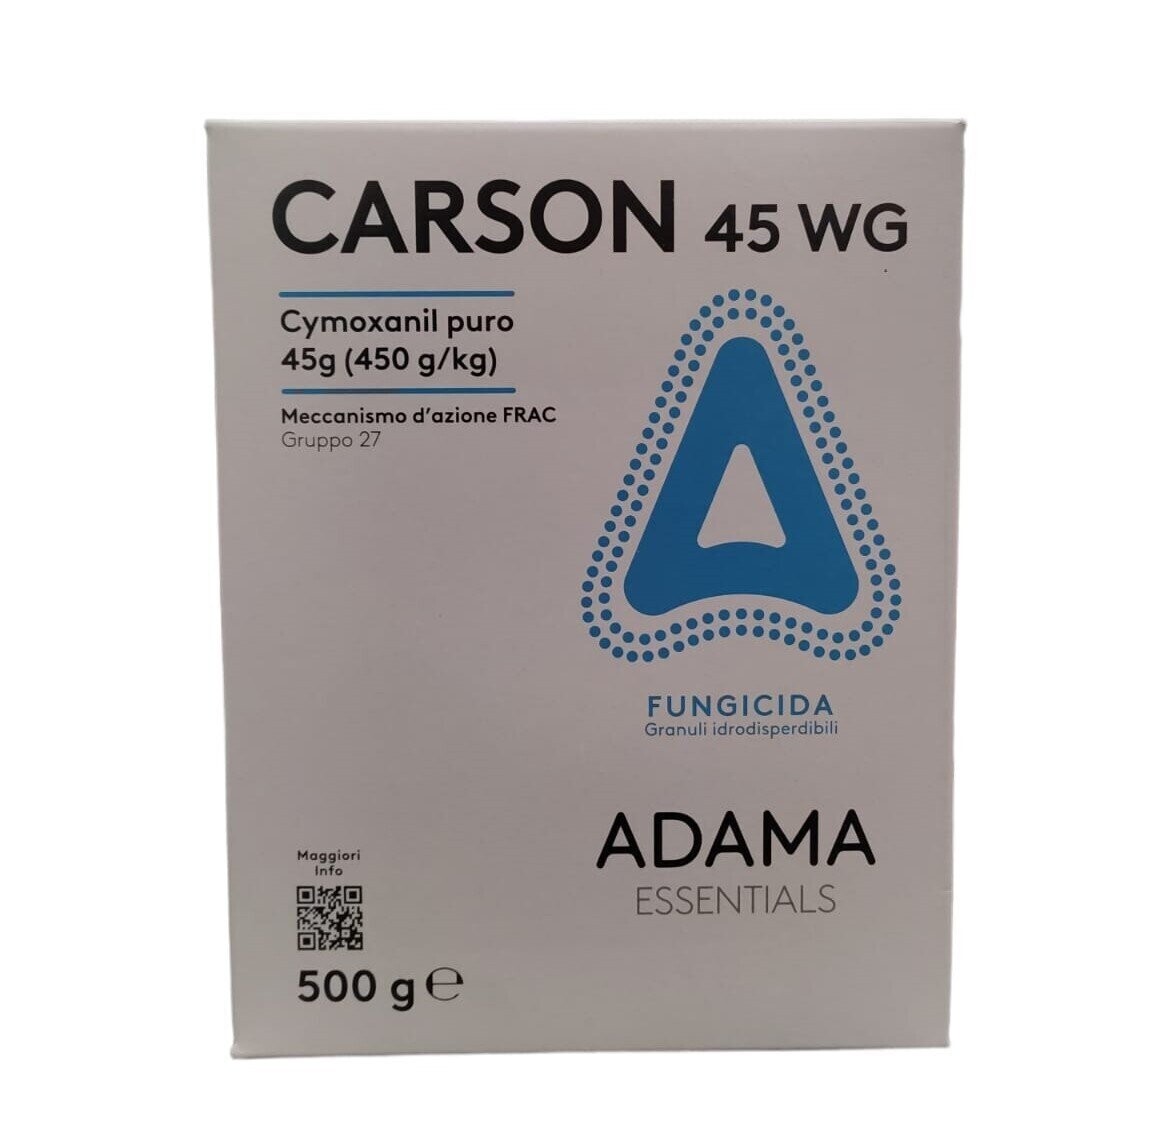 CARSON 45 WG CYMOXANIL - ADAMA G. 500